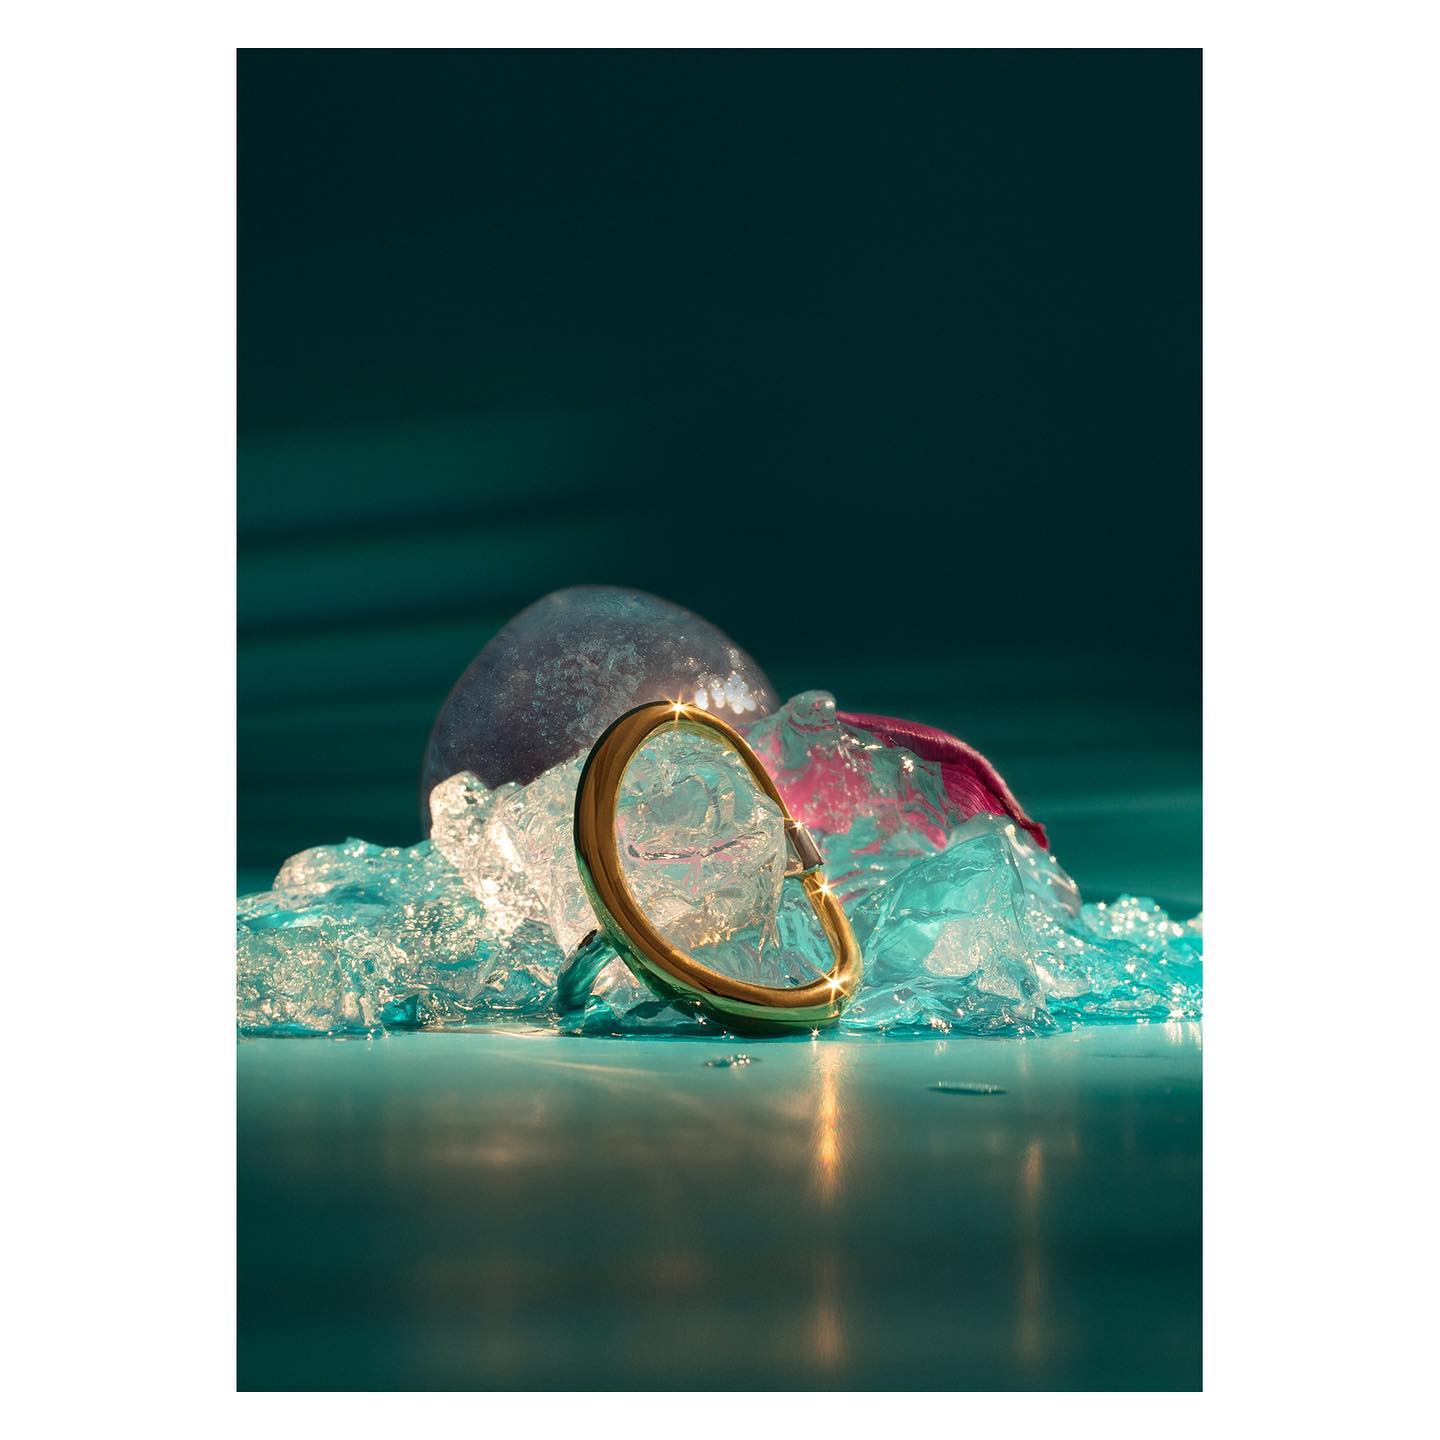 Photo d'un bracelet or posé sur une structure de glace bleu